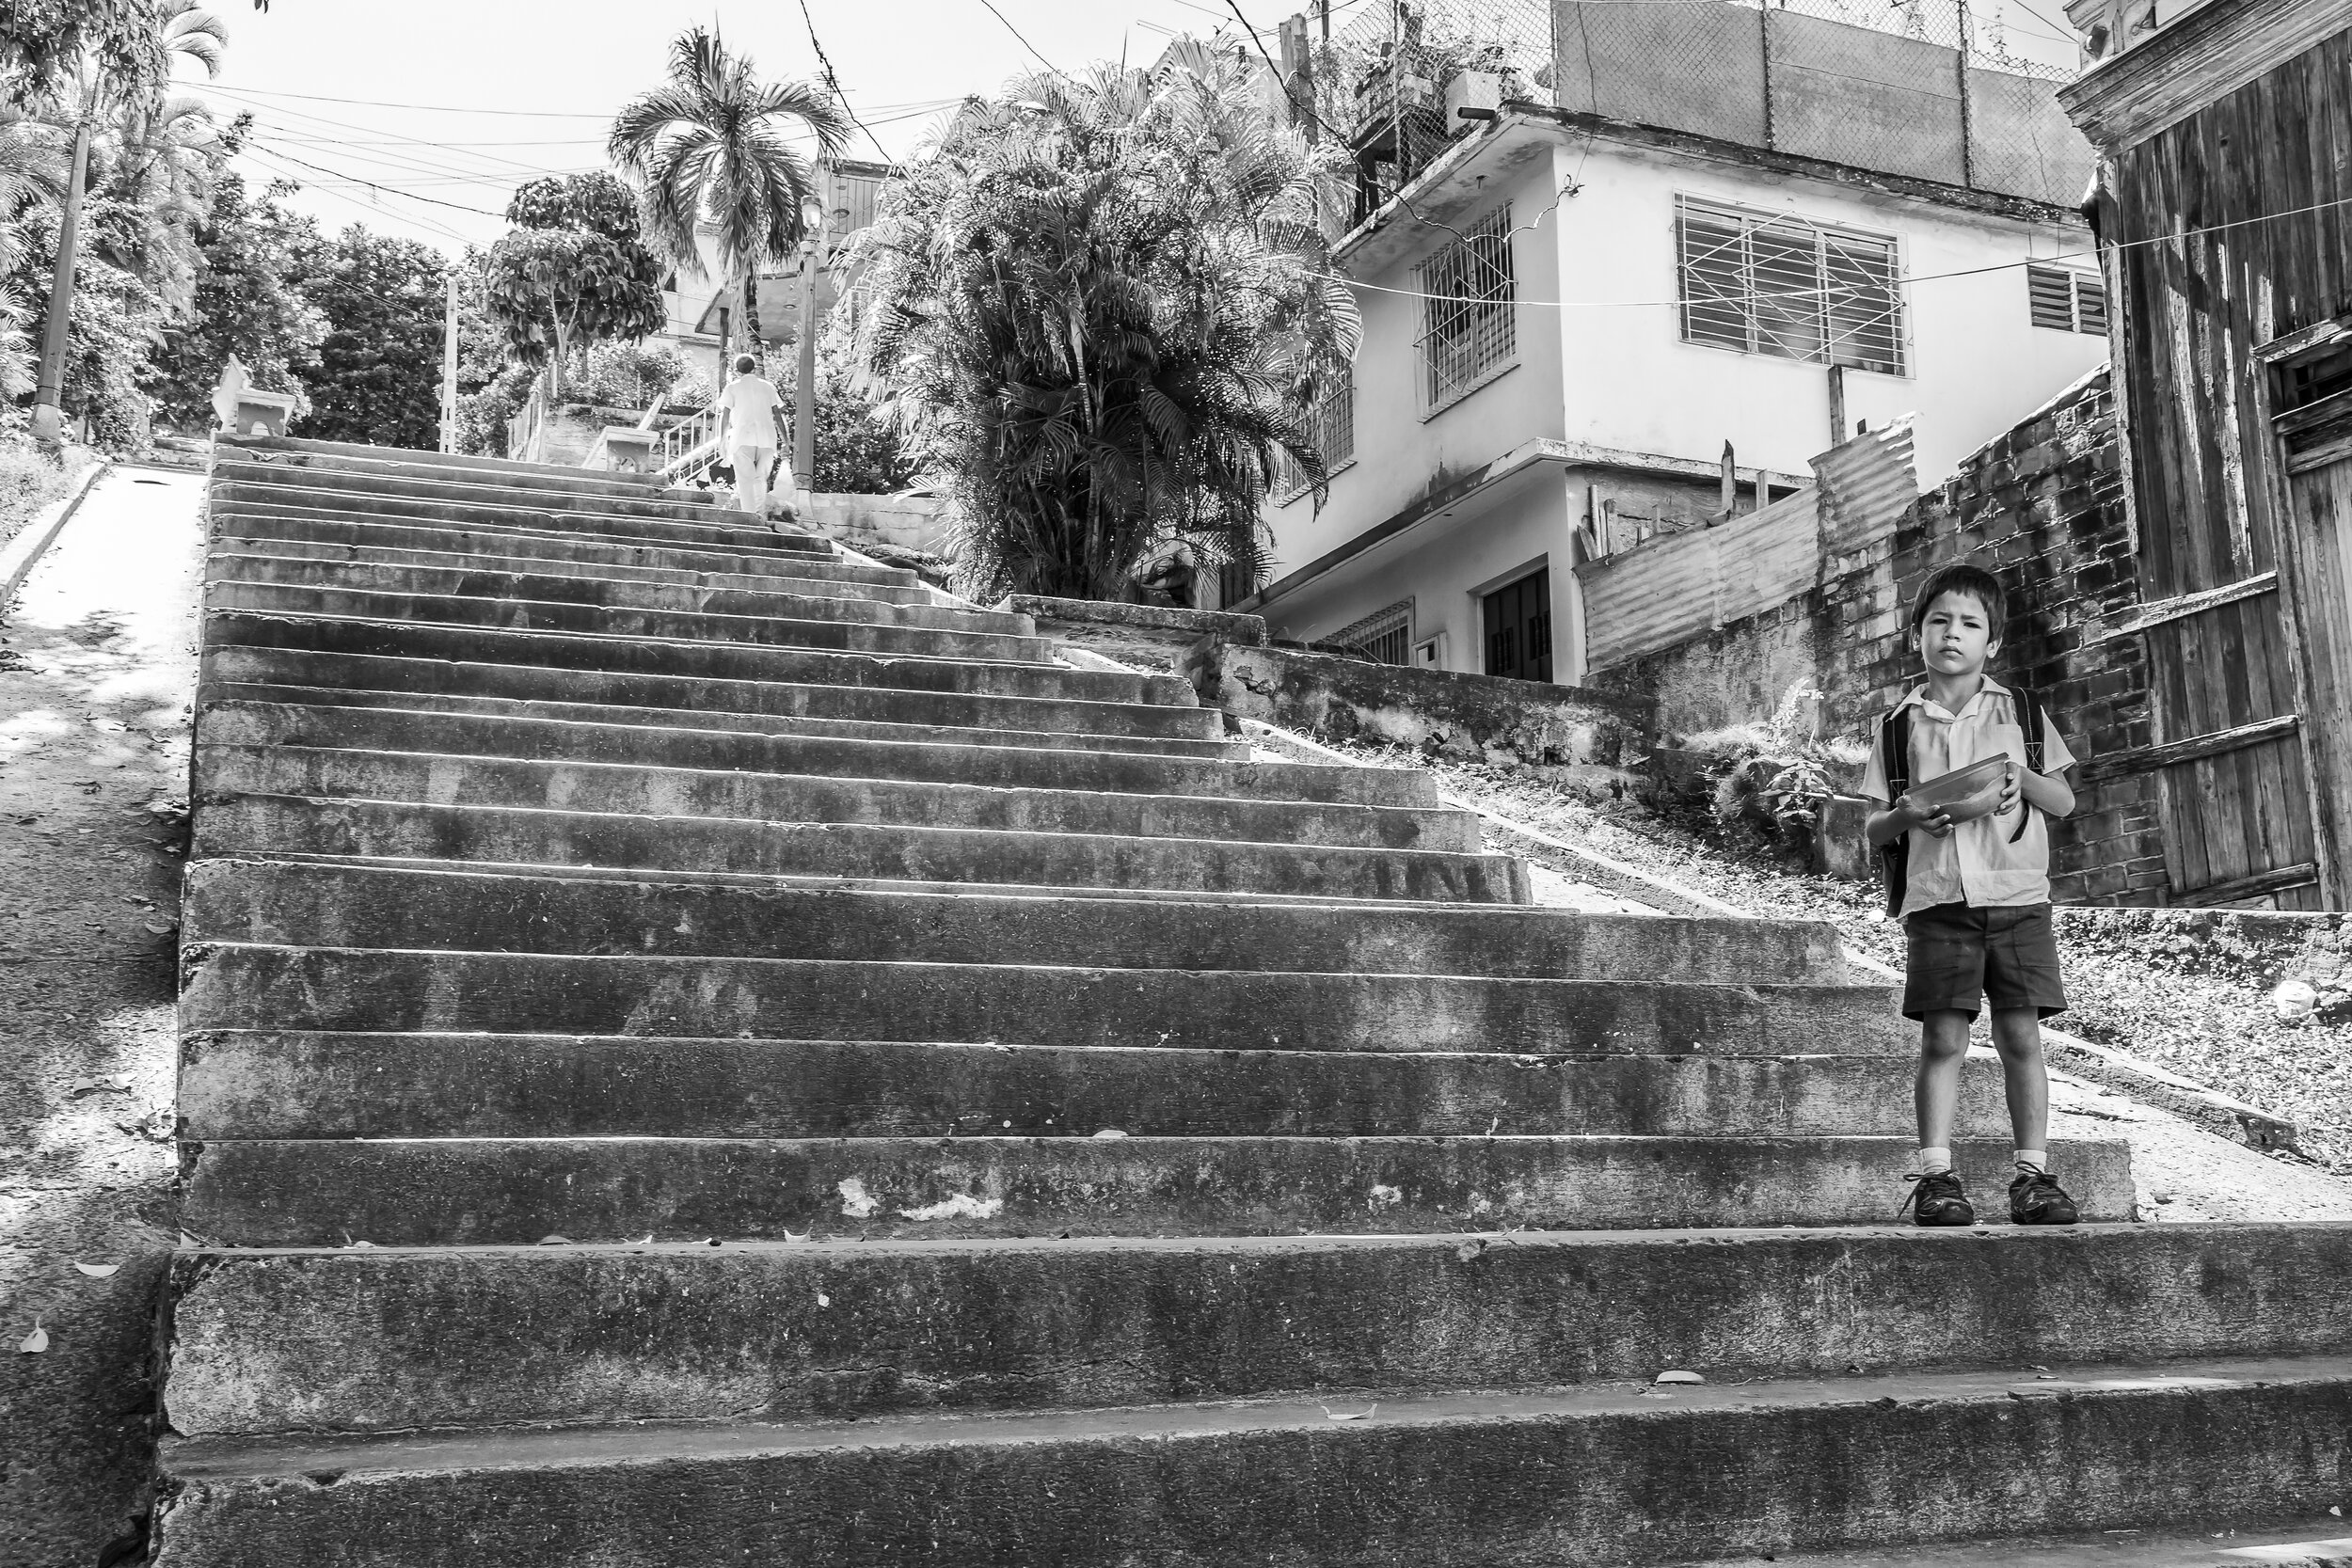 Escalinata de Calle 4 entre Gasómetro e Indio, 2011